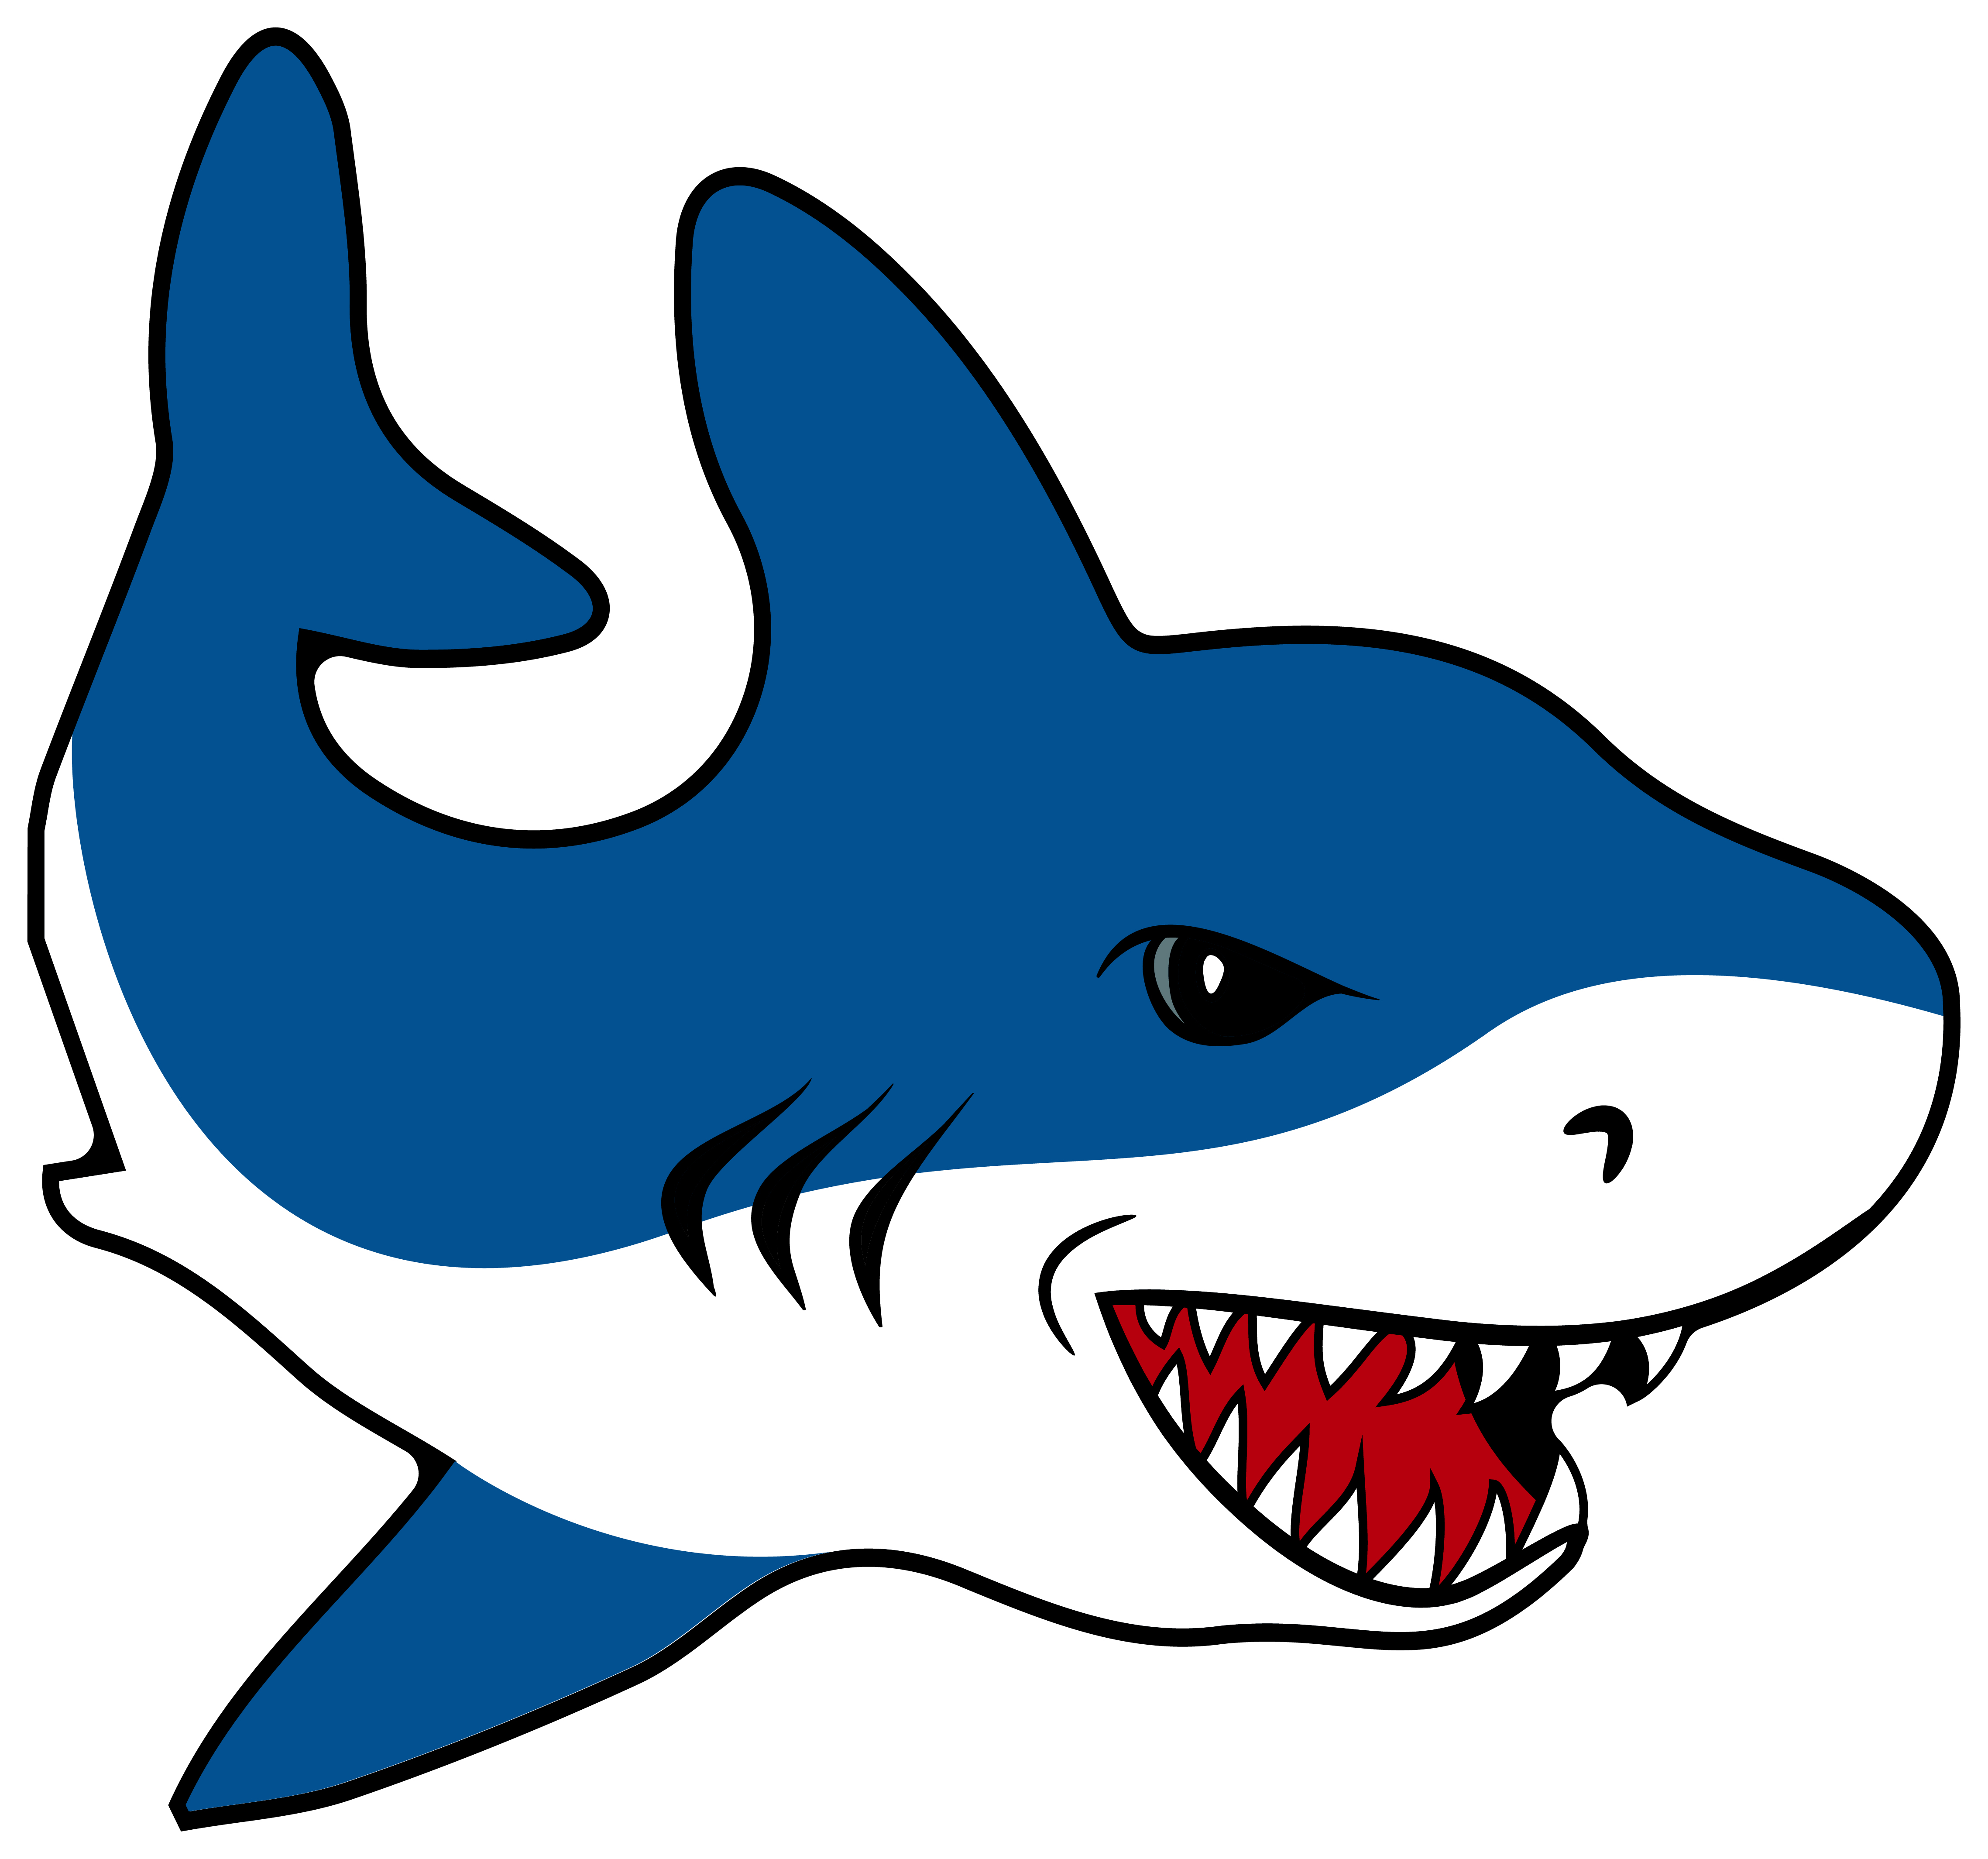 4x Aufkleber Shark Hai 5x5 cm für Auto KFZ Handy Laptop Haifisch blau